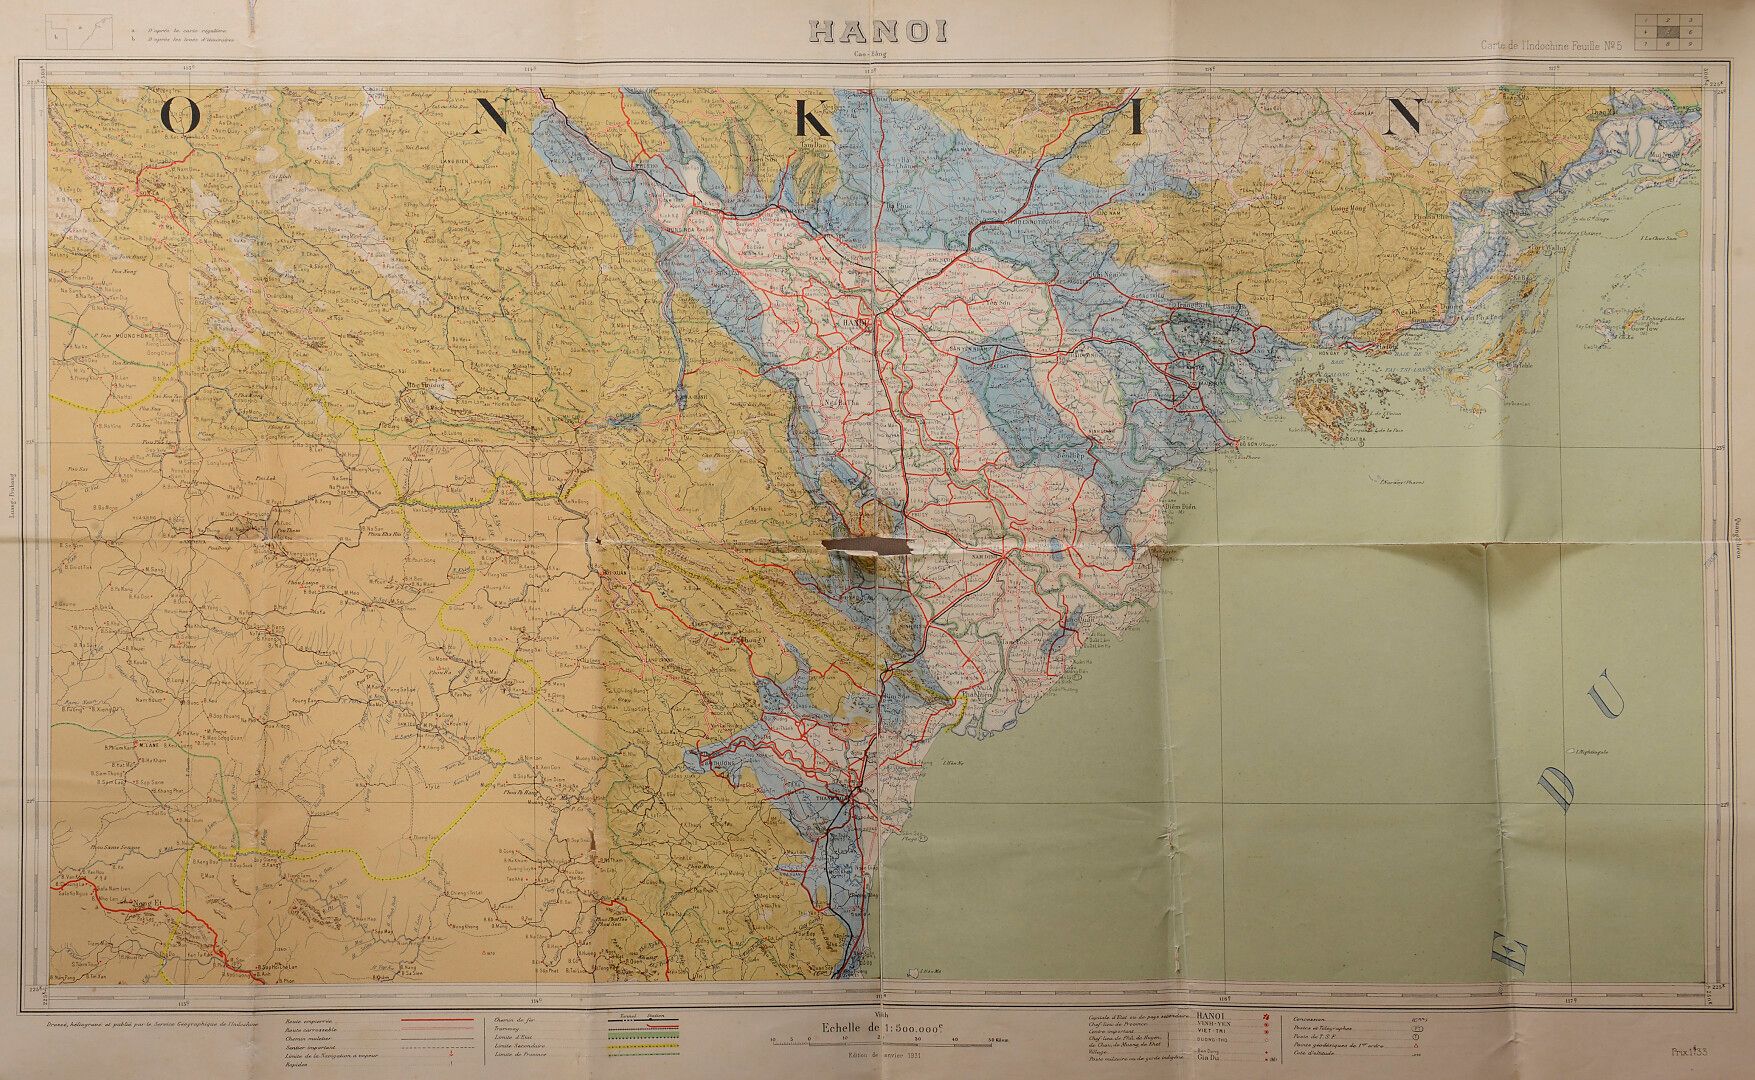 Null 
Karte von Indochina, Blatt N5. Hanoi-Cao Bang.

Gezeichnet im Tiefdruckver&hellip;